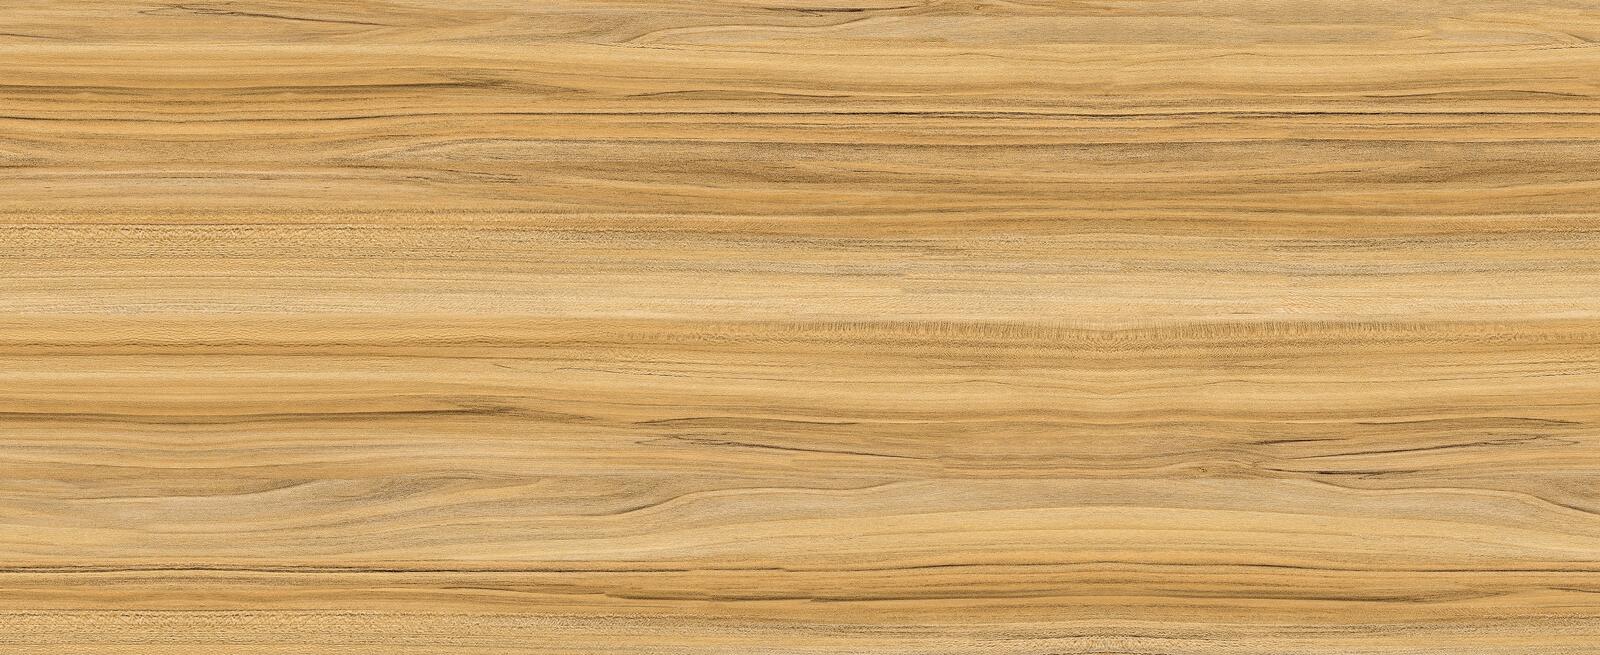 Wallpapers wood floor product on the desktop